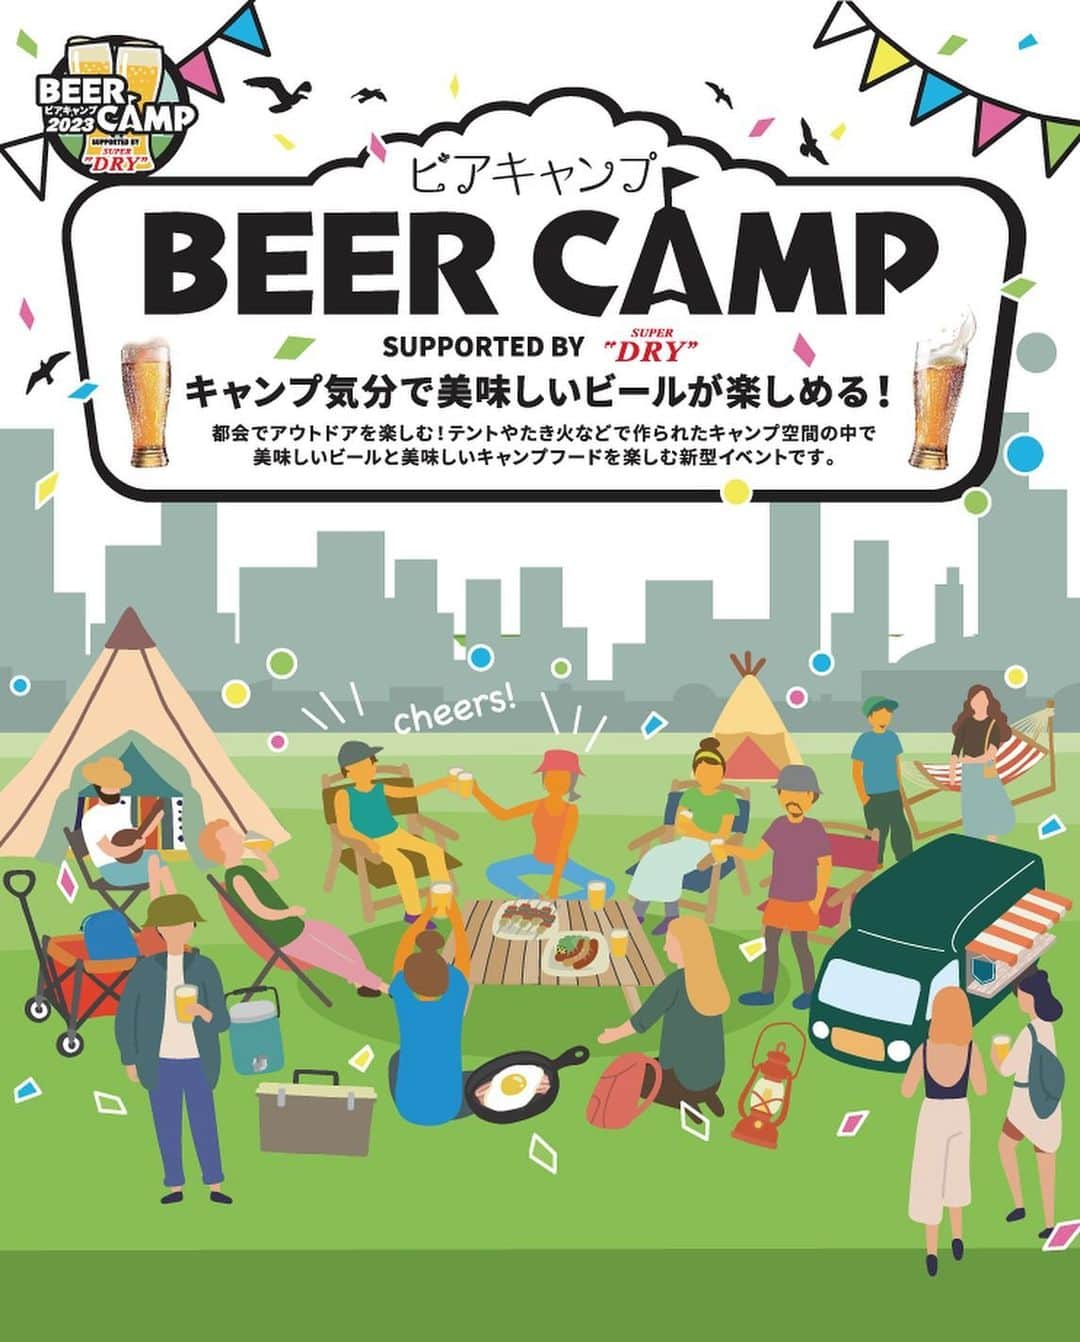 たまプラーザ テラスのインスタグラム：「たまプラーザ テラスの​ （（　EVENT 📢 　））  秋風が心地よい季節🍁 駅前でキャンプ気分を味わいませんか。  ／ 美味しいビールと 選りすぐりのキャンプグルメが堪能できる3日間 「BEER CAMP」をご紹介🍺 ＼ 　 都会でアウトドアを楽しむ！ テントやたき火のオブジェなどで作られた キャンプ空間の中で美味しいビールと 美味しいキャンプフードを楽しむ新型イベントです。 　 キャンプ大好きタレントトークショーを開催🙌 キッチンカーが出店✨ アサヒスーパードライが楽しめる🍻  ご家族でぜひ、駅前キャンプ気分をお楽しみください😊 　 📍ゲートプラザ1F  ステーションコート 【開催日】11/3（FRI）4（SAT）5（SUN）  【開催時間】11:00-18:00  ※ 雨天決行、荒天中止となります、情報はHPをご確認ください。 🌿━…━…━…━… 参考になったら​、 いいね&保存してくださいねっ​😊🌟 　 「私を、かなえる場所。たまプラーザ テラス」 @tamaplaza_terrace ━…━…━…━…🌿  #たまプラーザテラス #たまプラーザterrace #たまプラーザ #たまプラ #たまプラーザ駅 #東急 #田園都市線 #商業施設 #ショッピングセンター #駅前キャンプ#ビアキャンプ　#BEERCAMP」